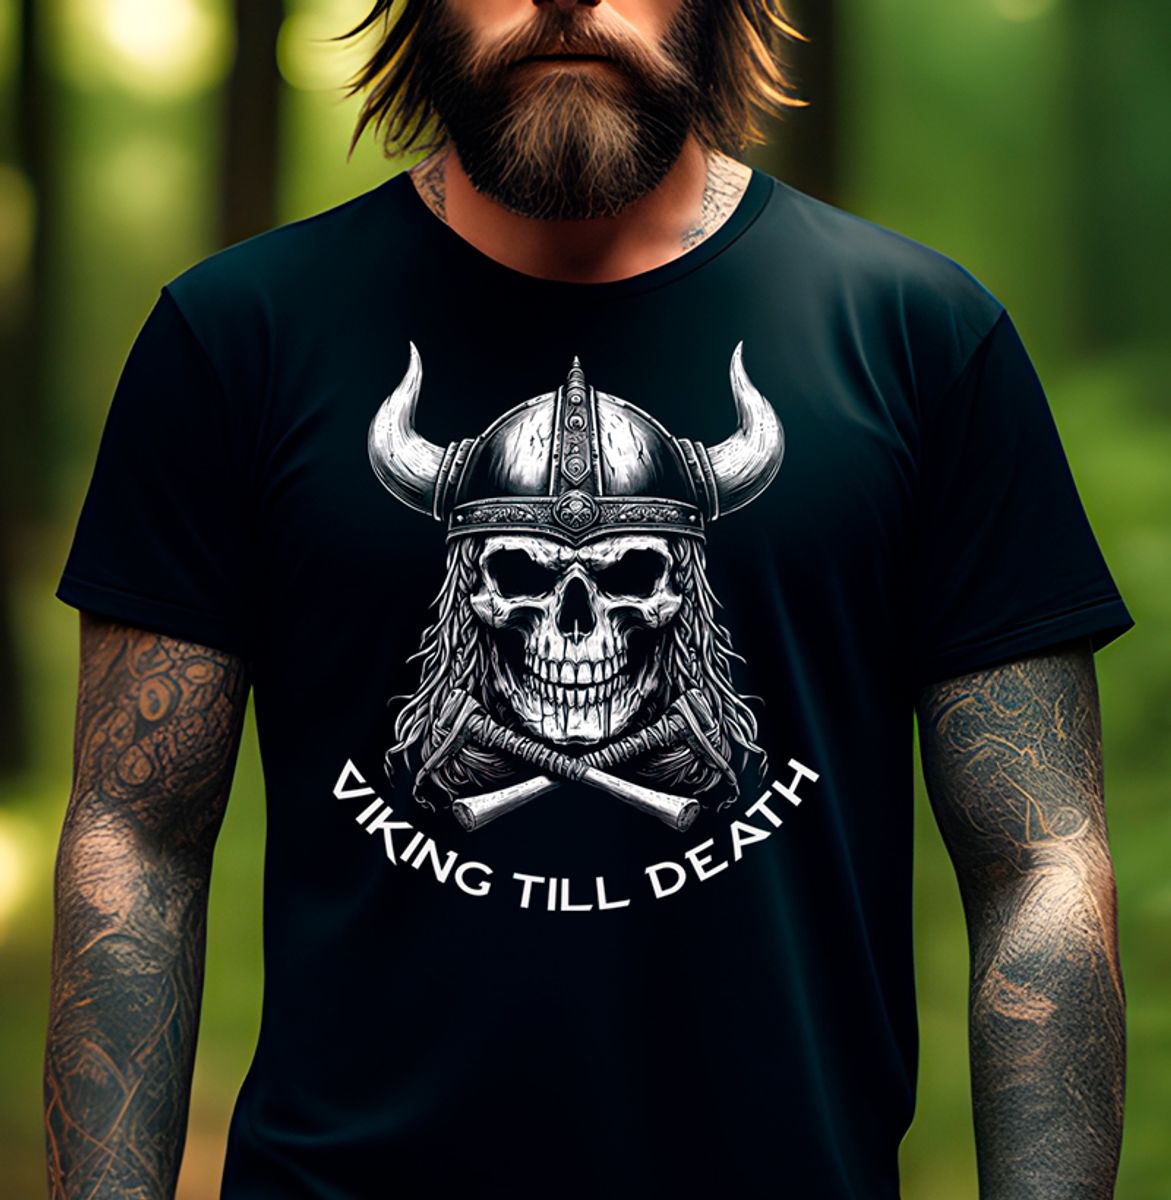 Nome do produto: Viking till Death